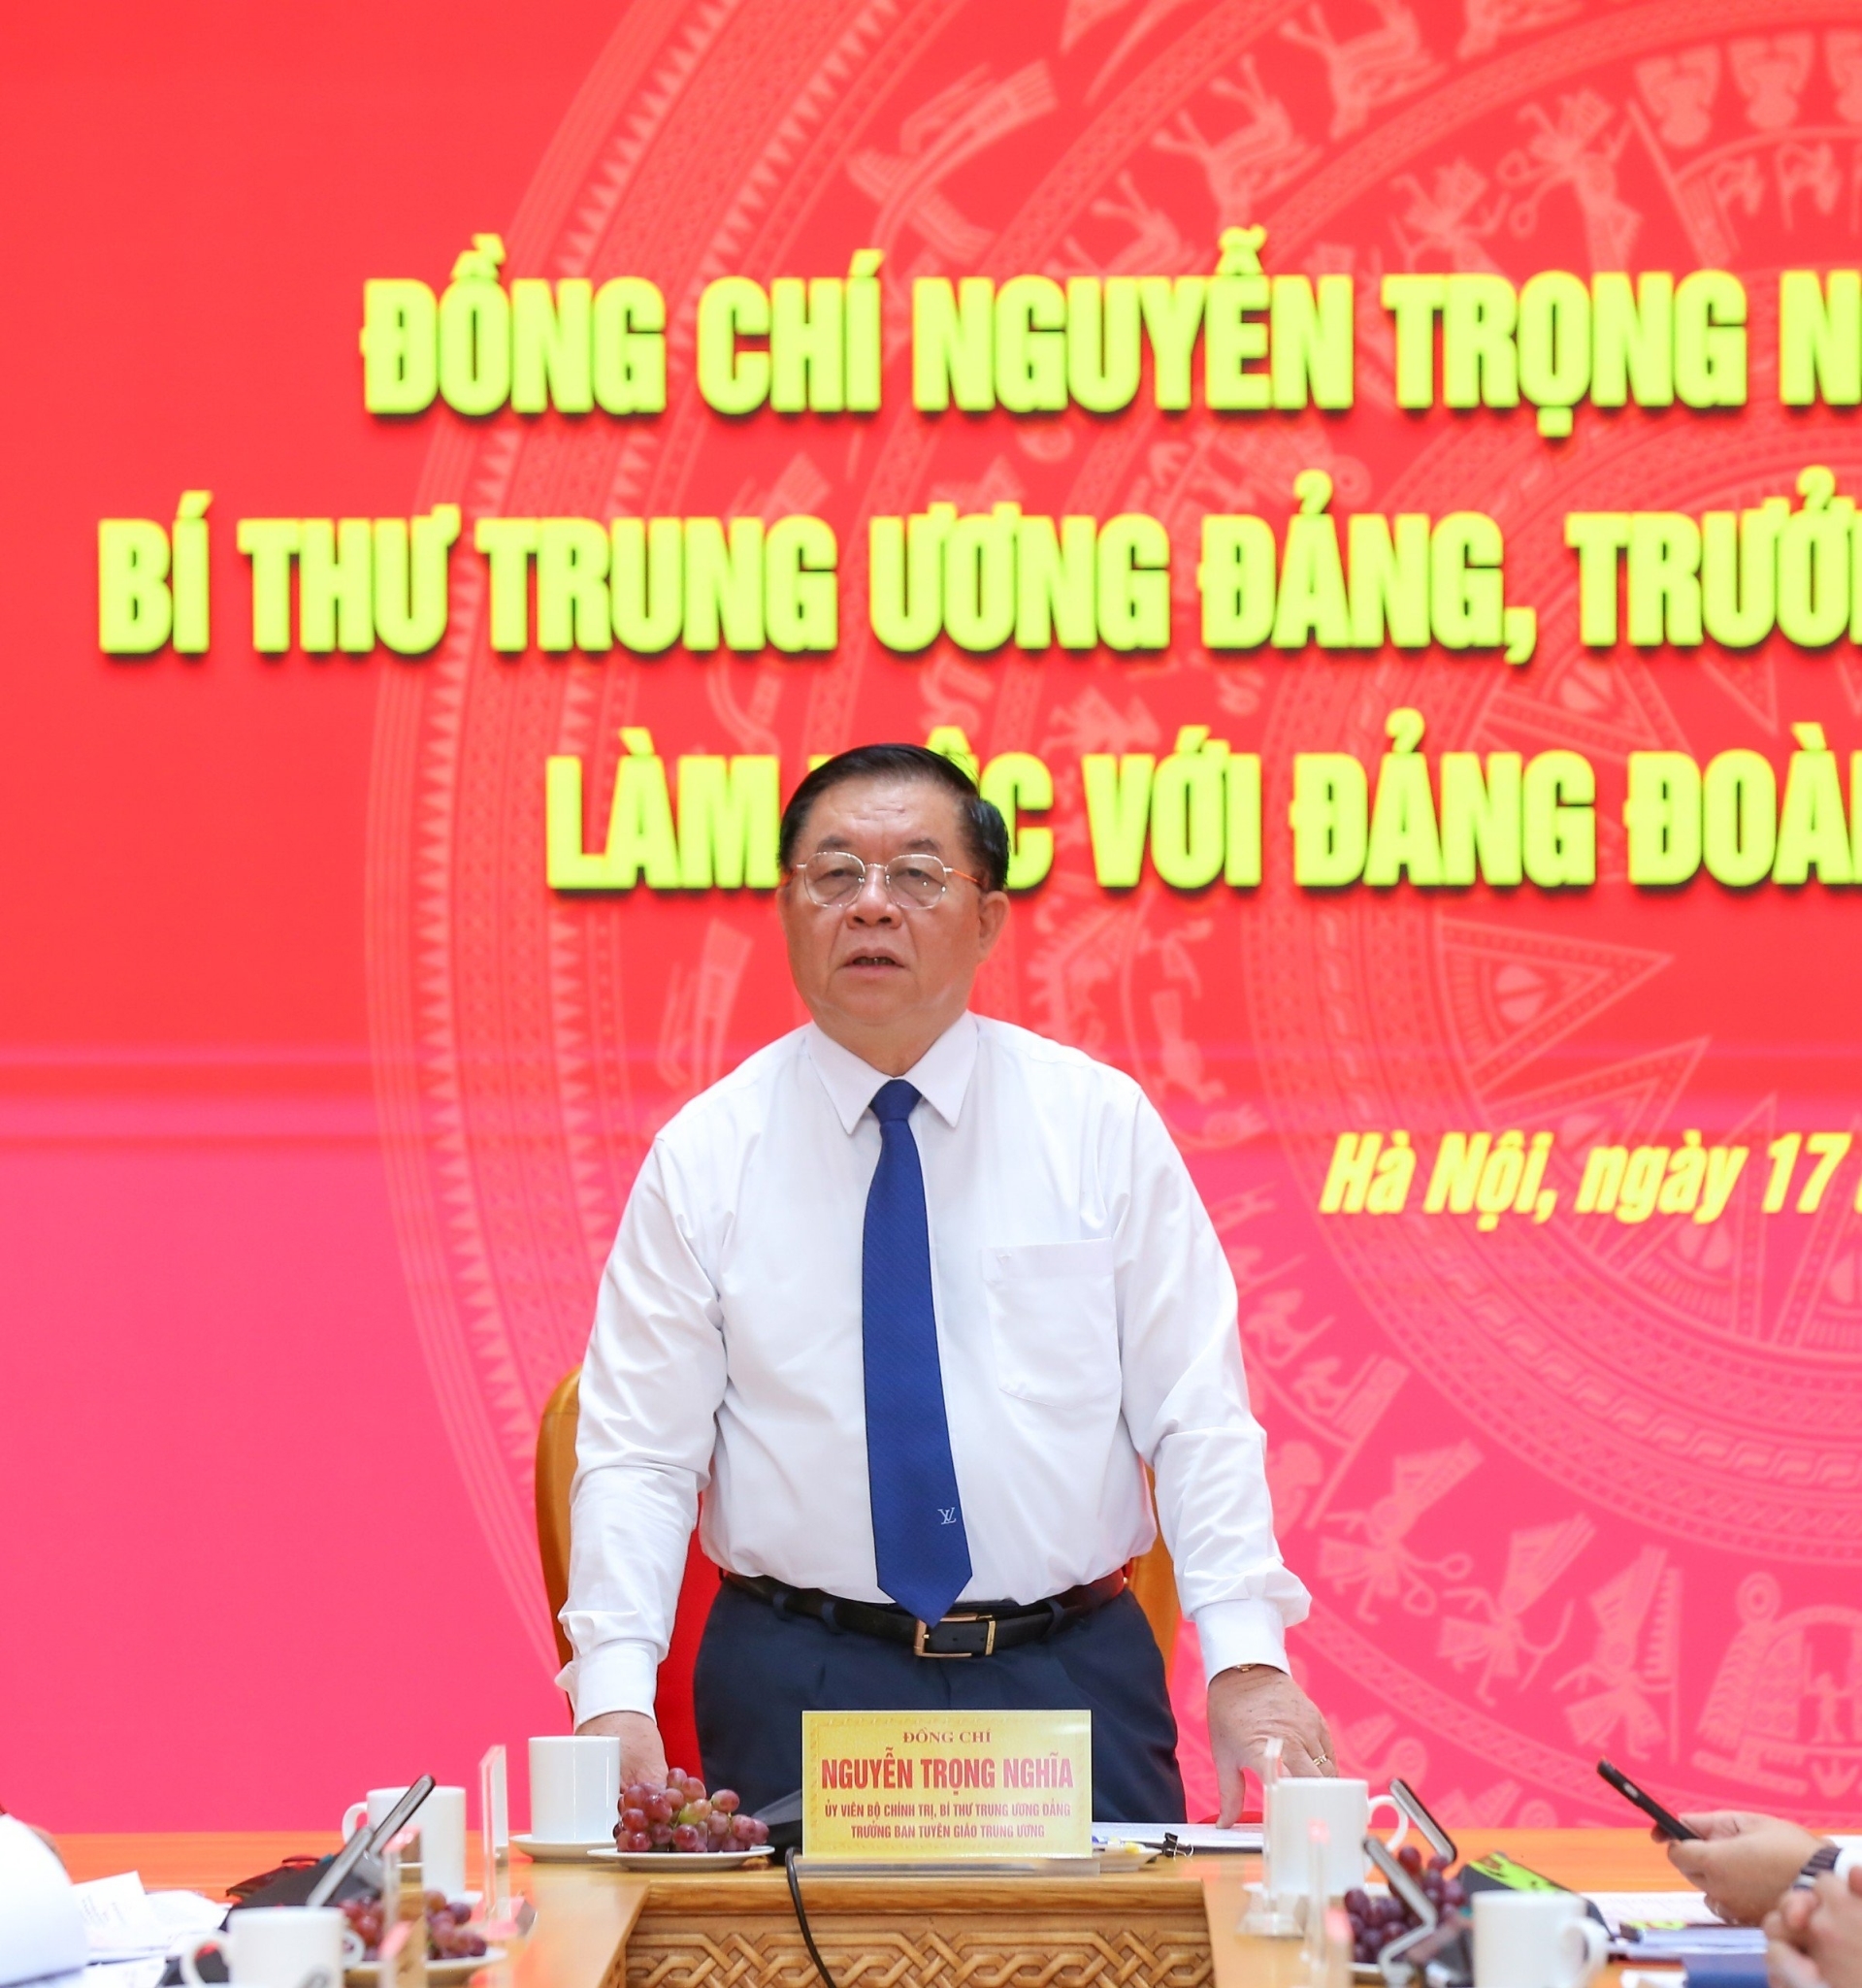 Đồng chí Nguyễn Trọng Nghĩa kết luận buổi làm việc.